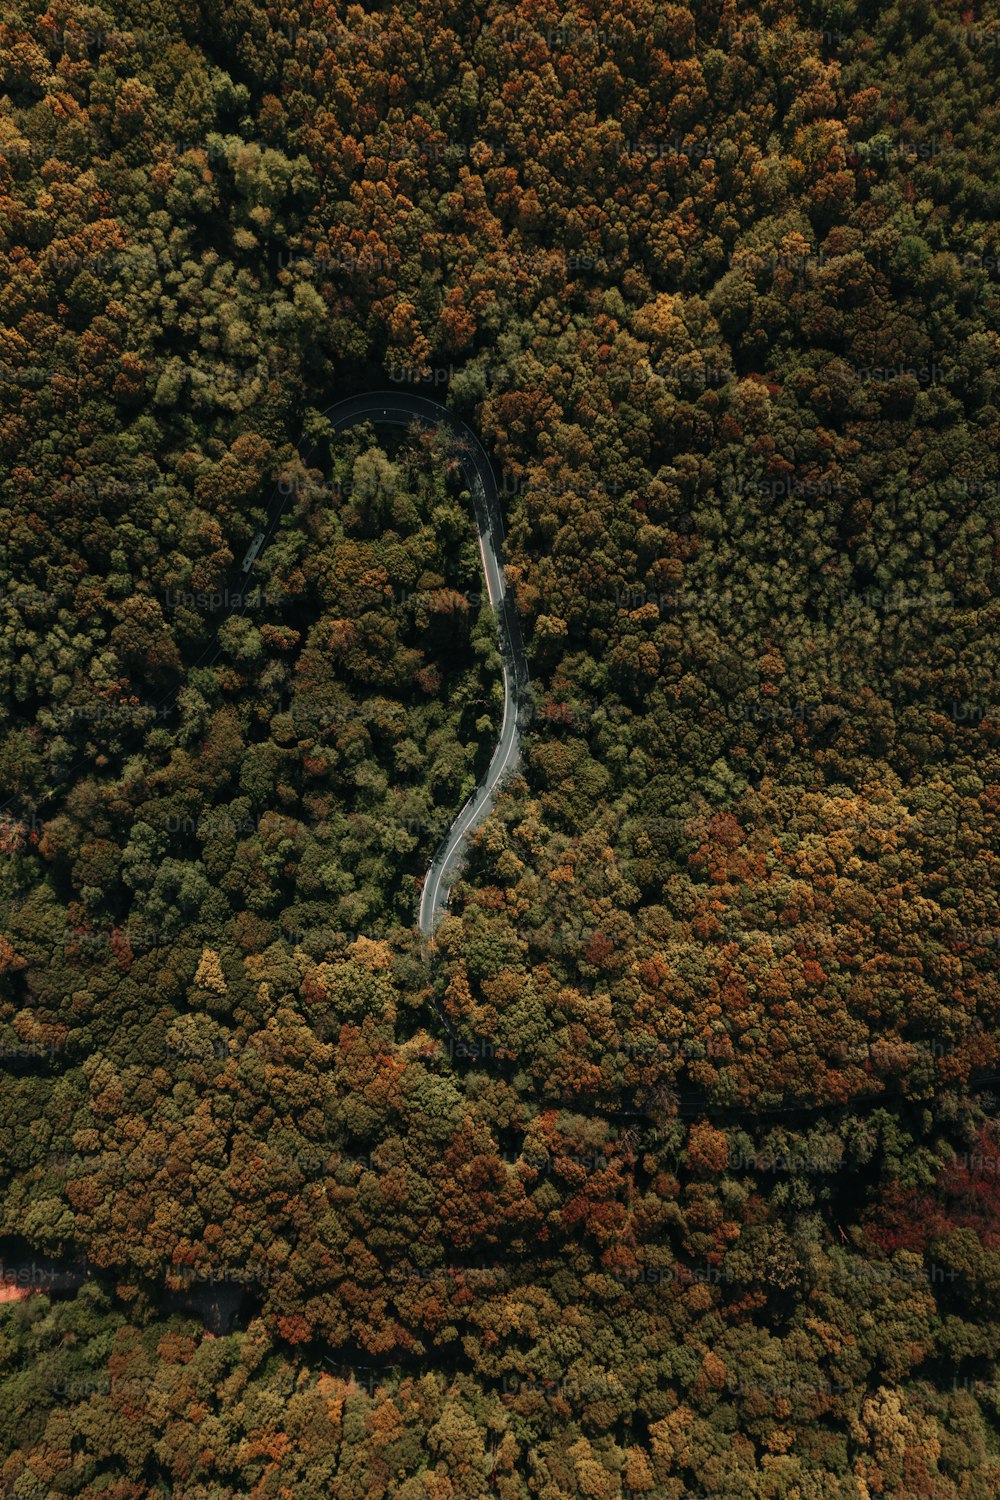 Una vista aérea de un río que atraviesa un bosque